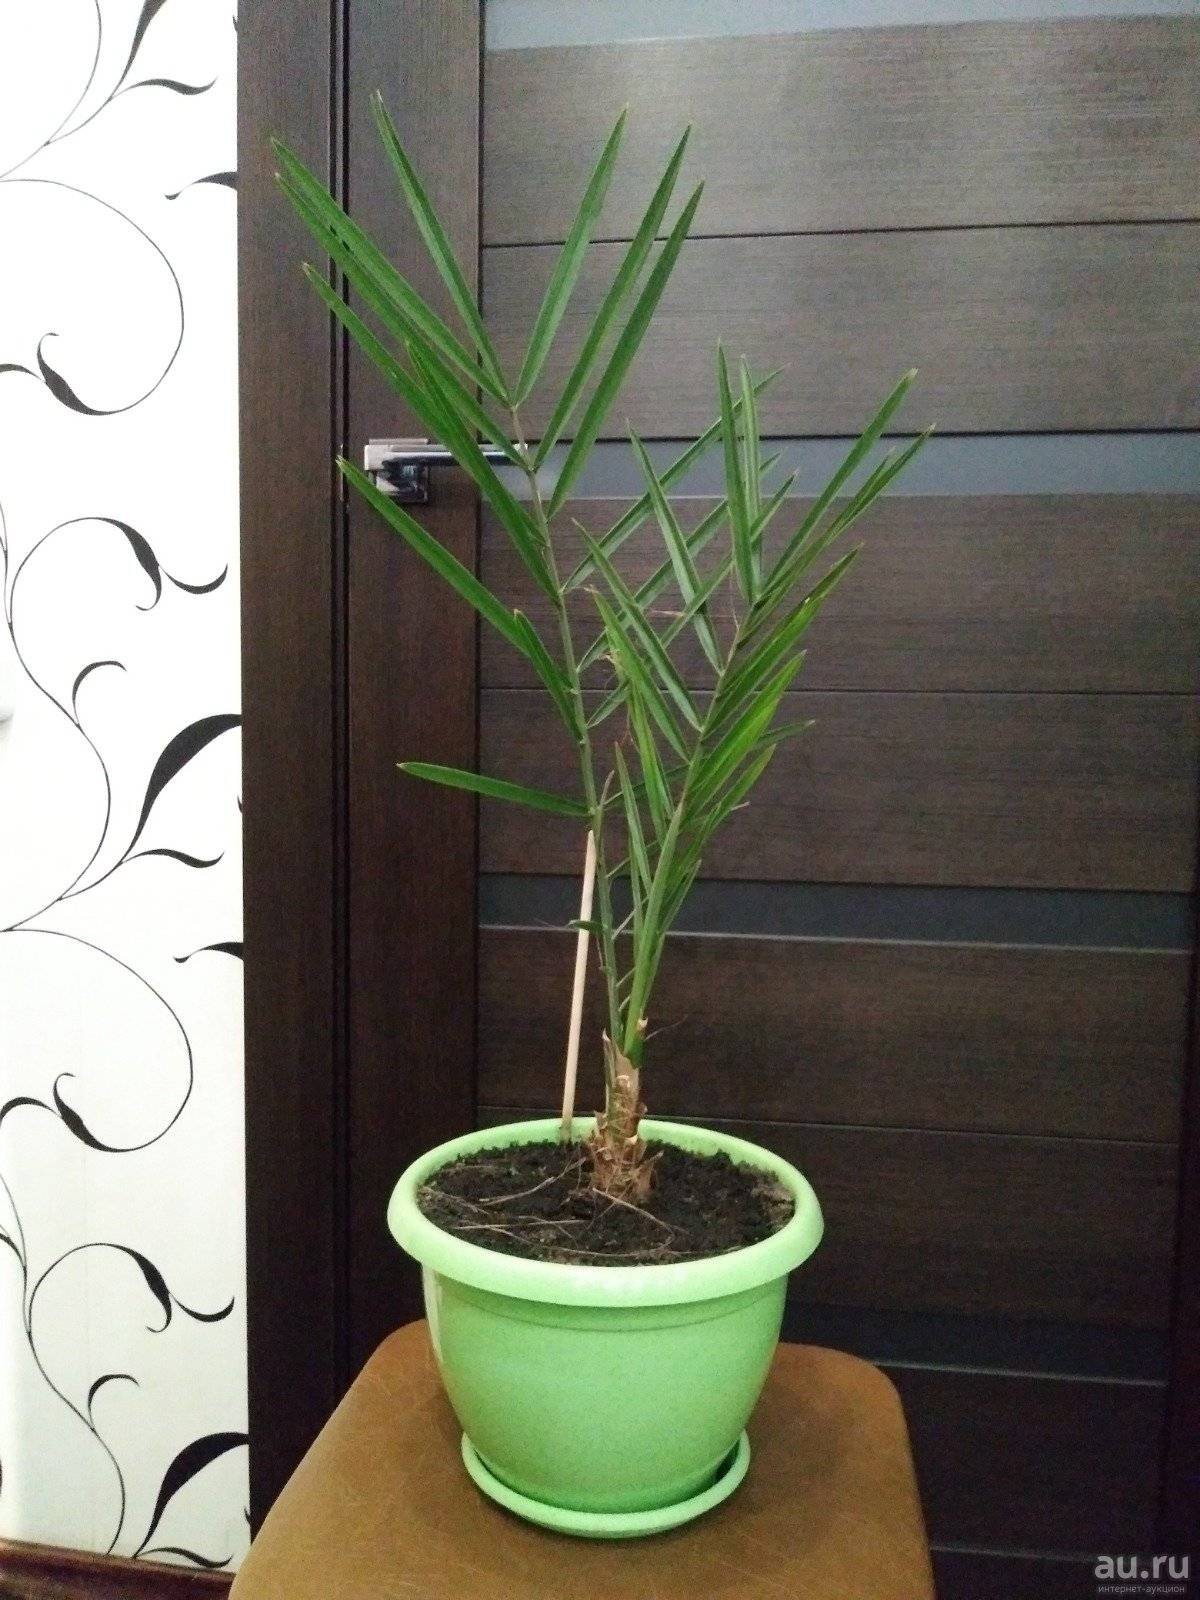 Финиковая пальма из косточки в домашних условиях - это реально? вполне! фото, инструкции selo.guru — интернет портал о сельском хозяйстве